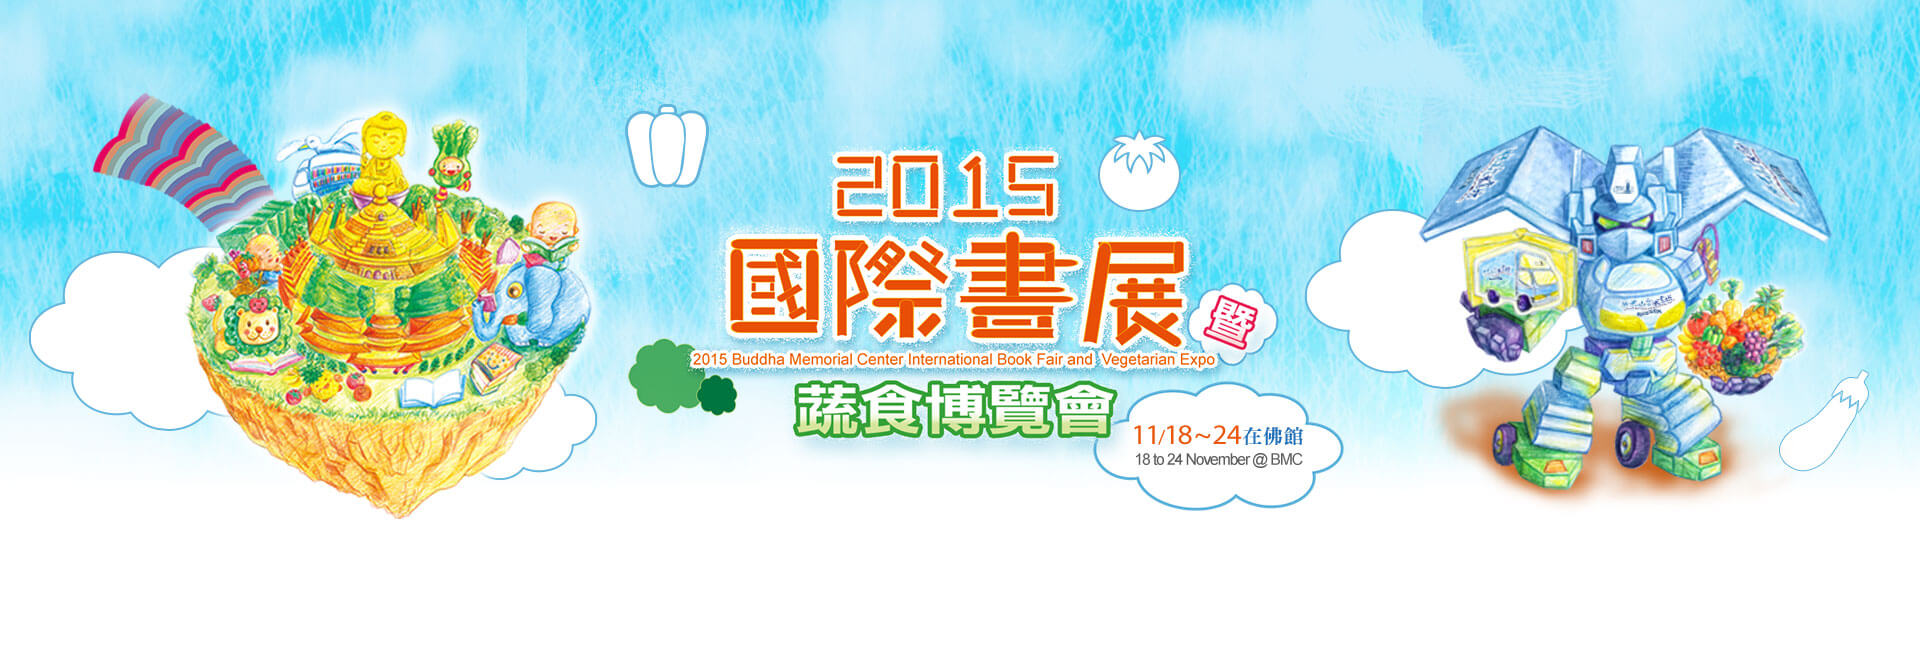 2015國際書展暨蔬食博覽會